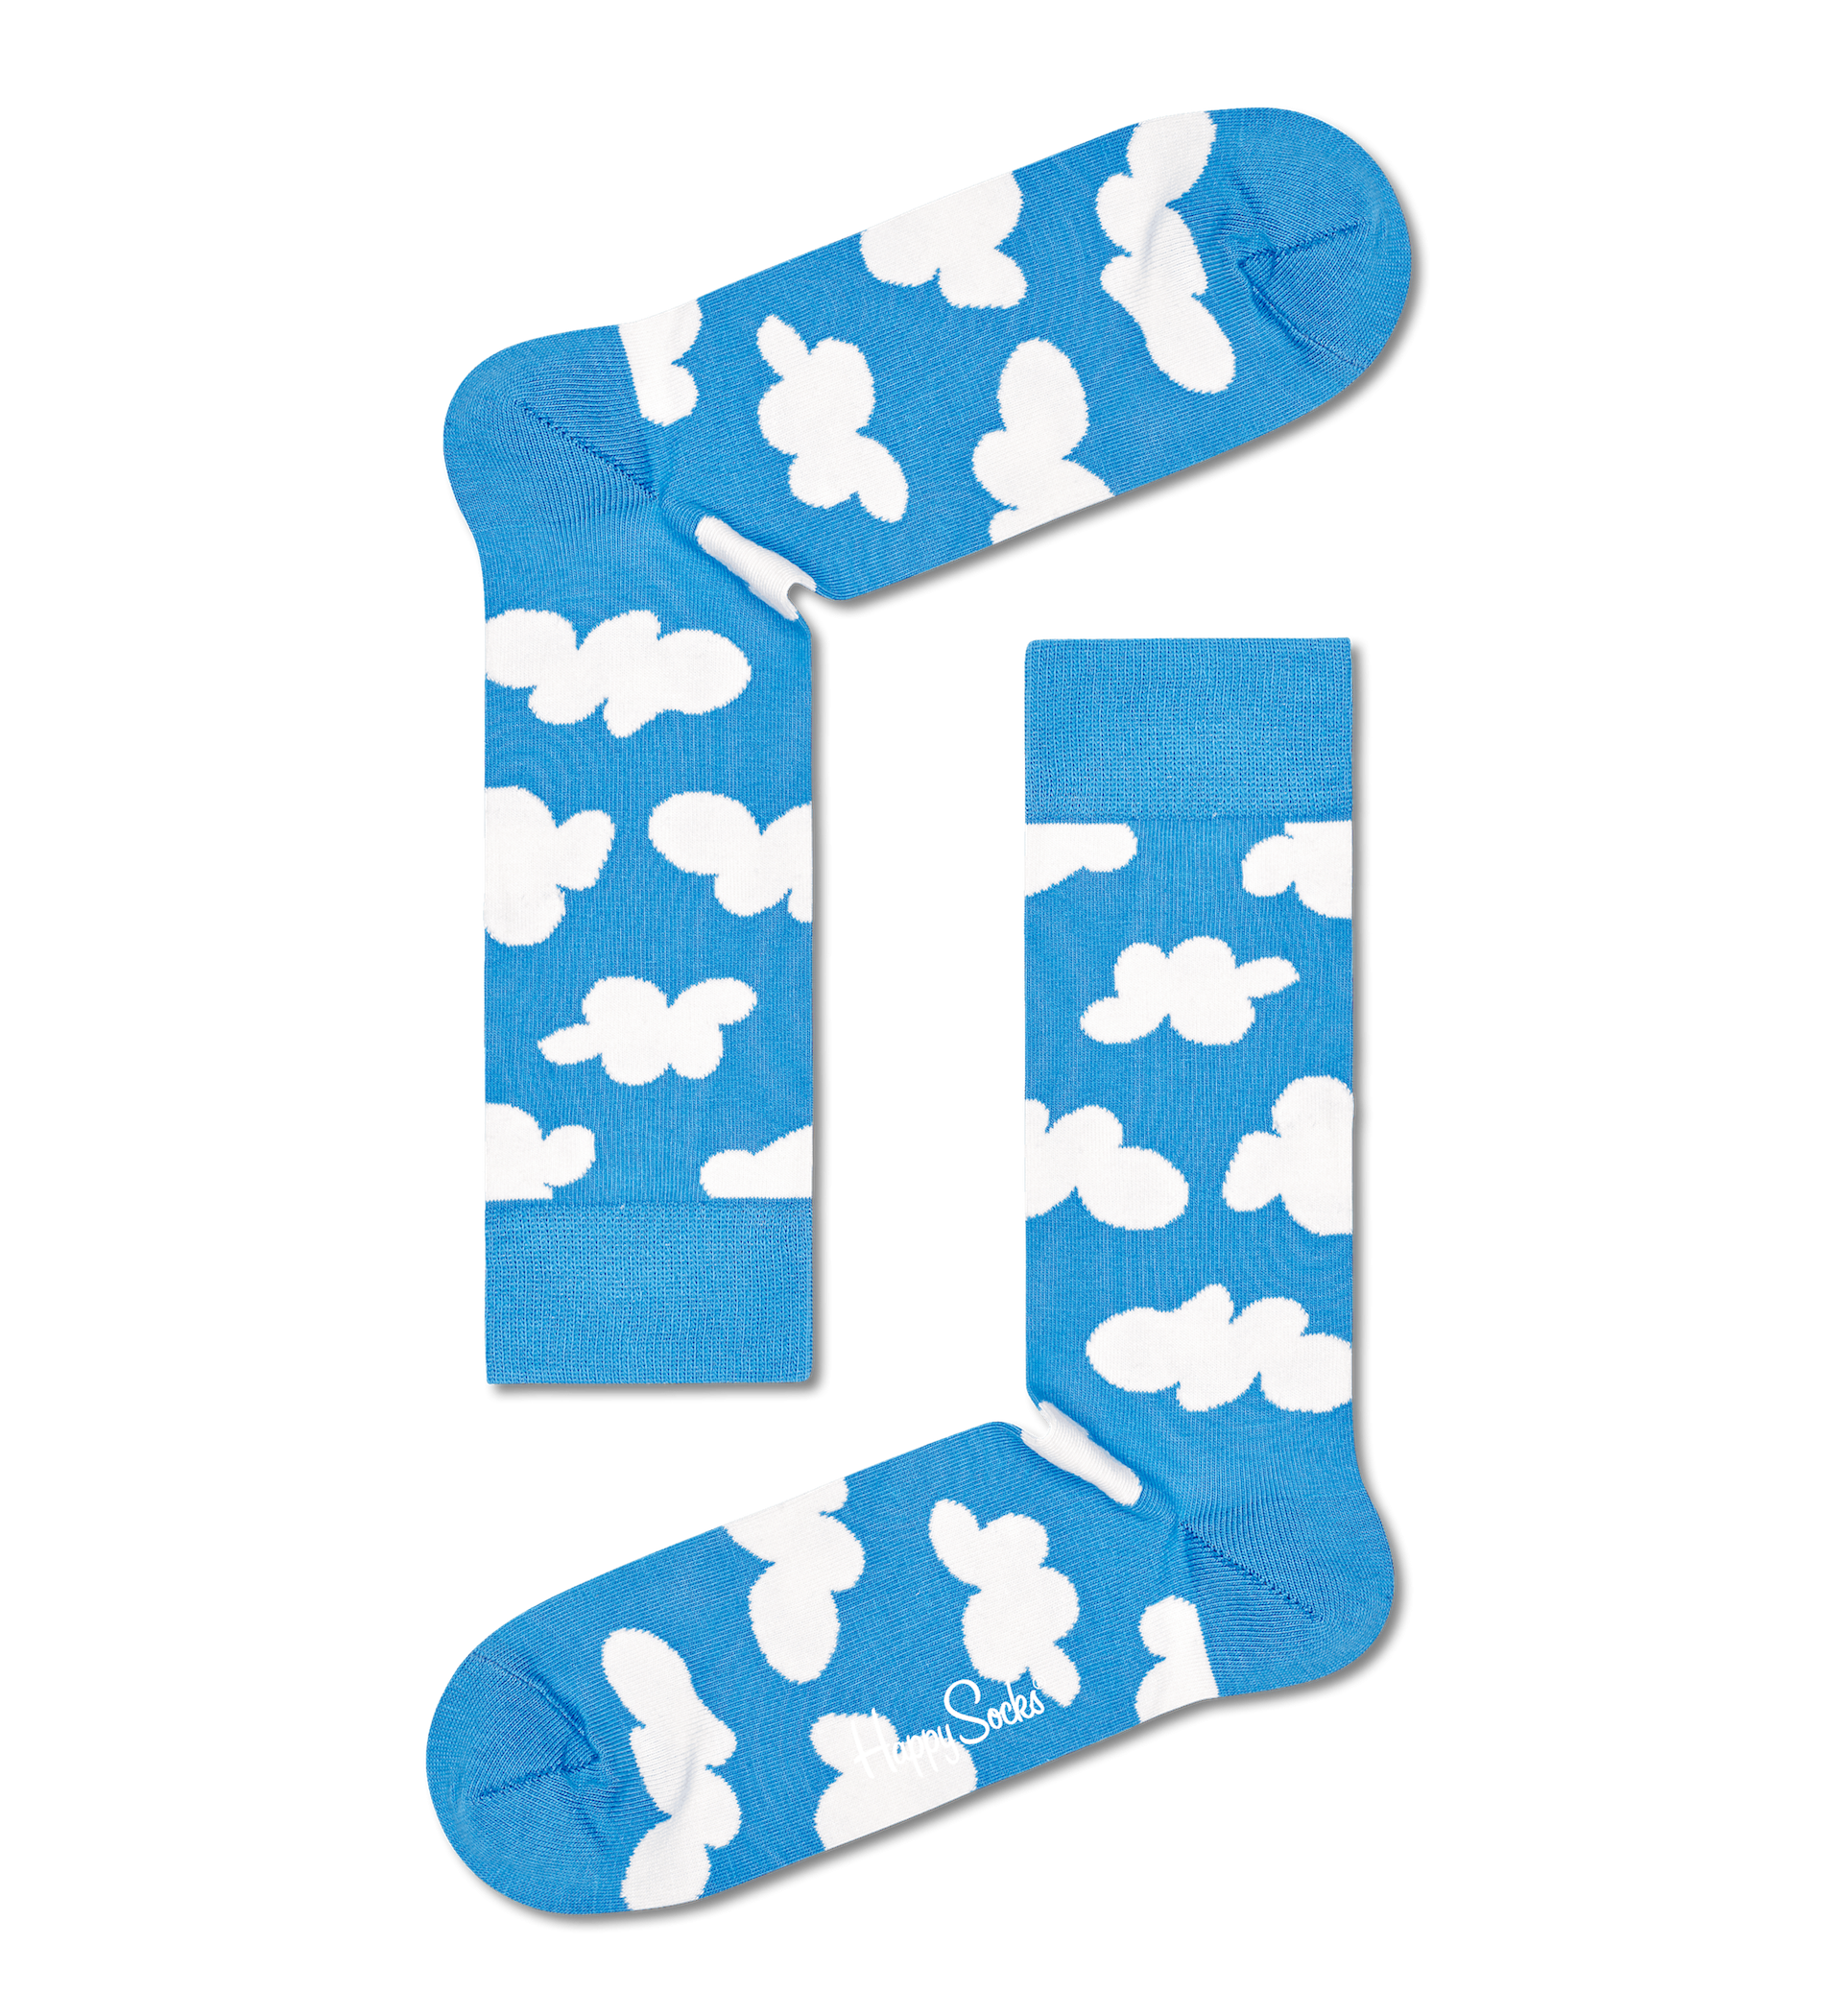 Modré ponožky Happy Socks s mraky, vzor Cloudy